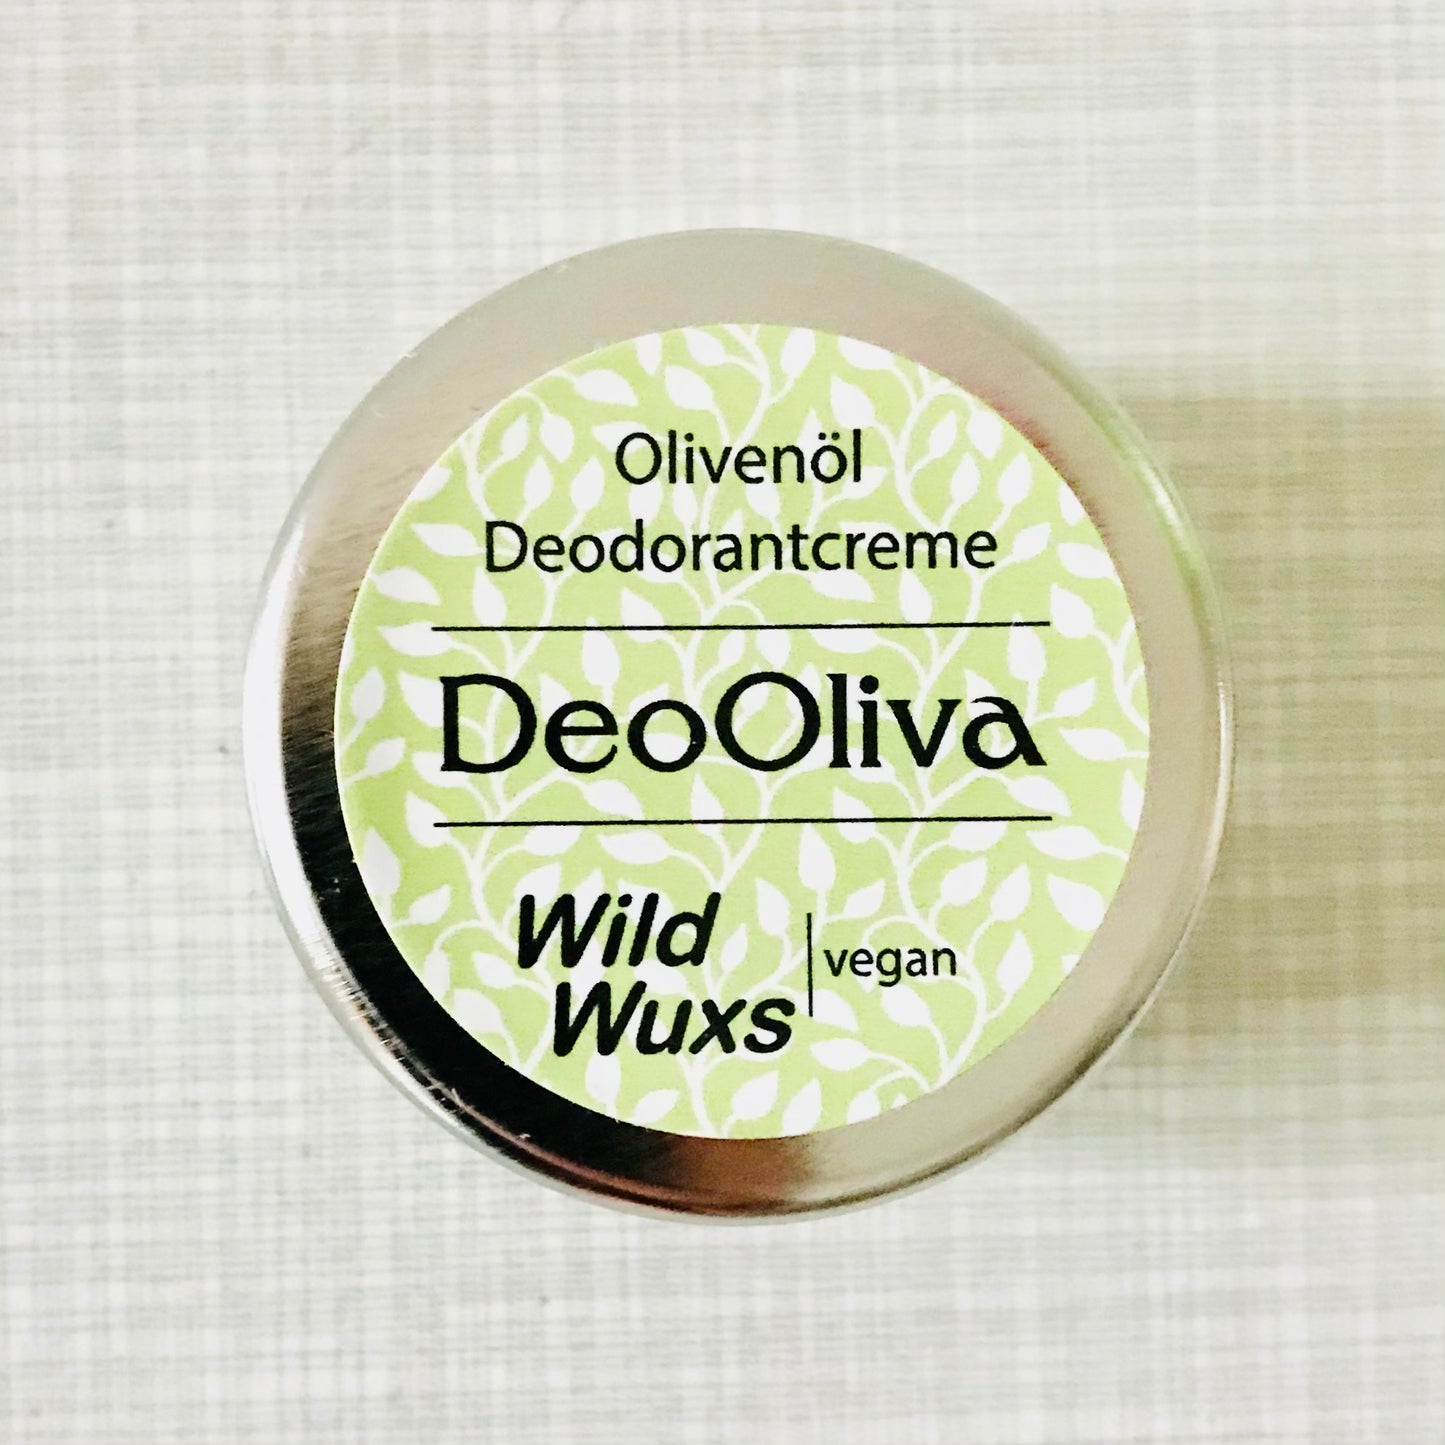 Deodorant Creme // Wildwux